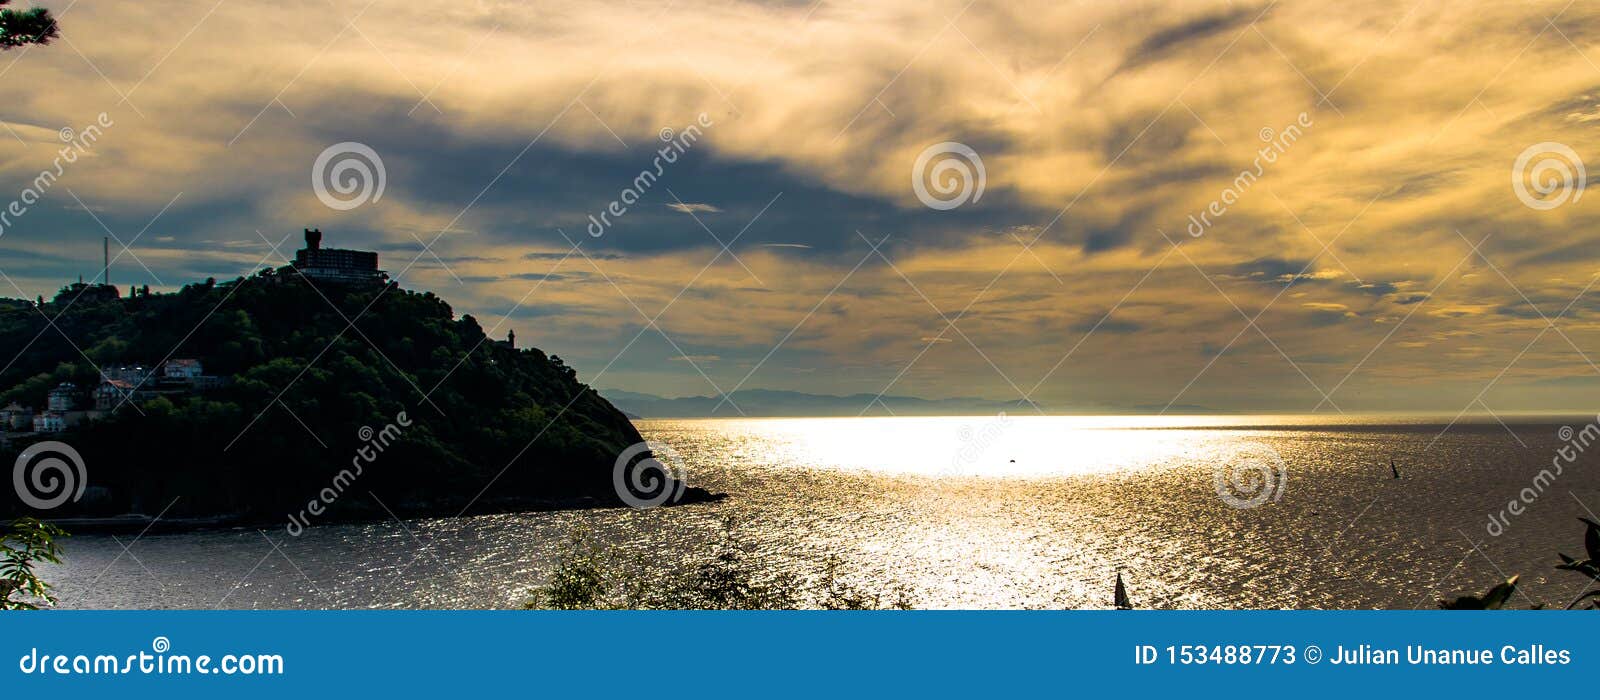 Морской бриз в San Sebastian. Море, небо, цвет, свет, castel, гора, деревья, утесы, в реальном маштабе времени, природа